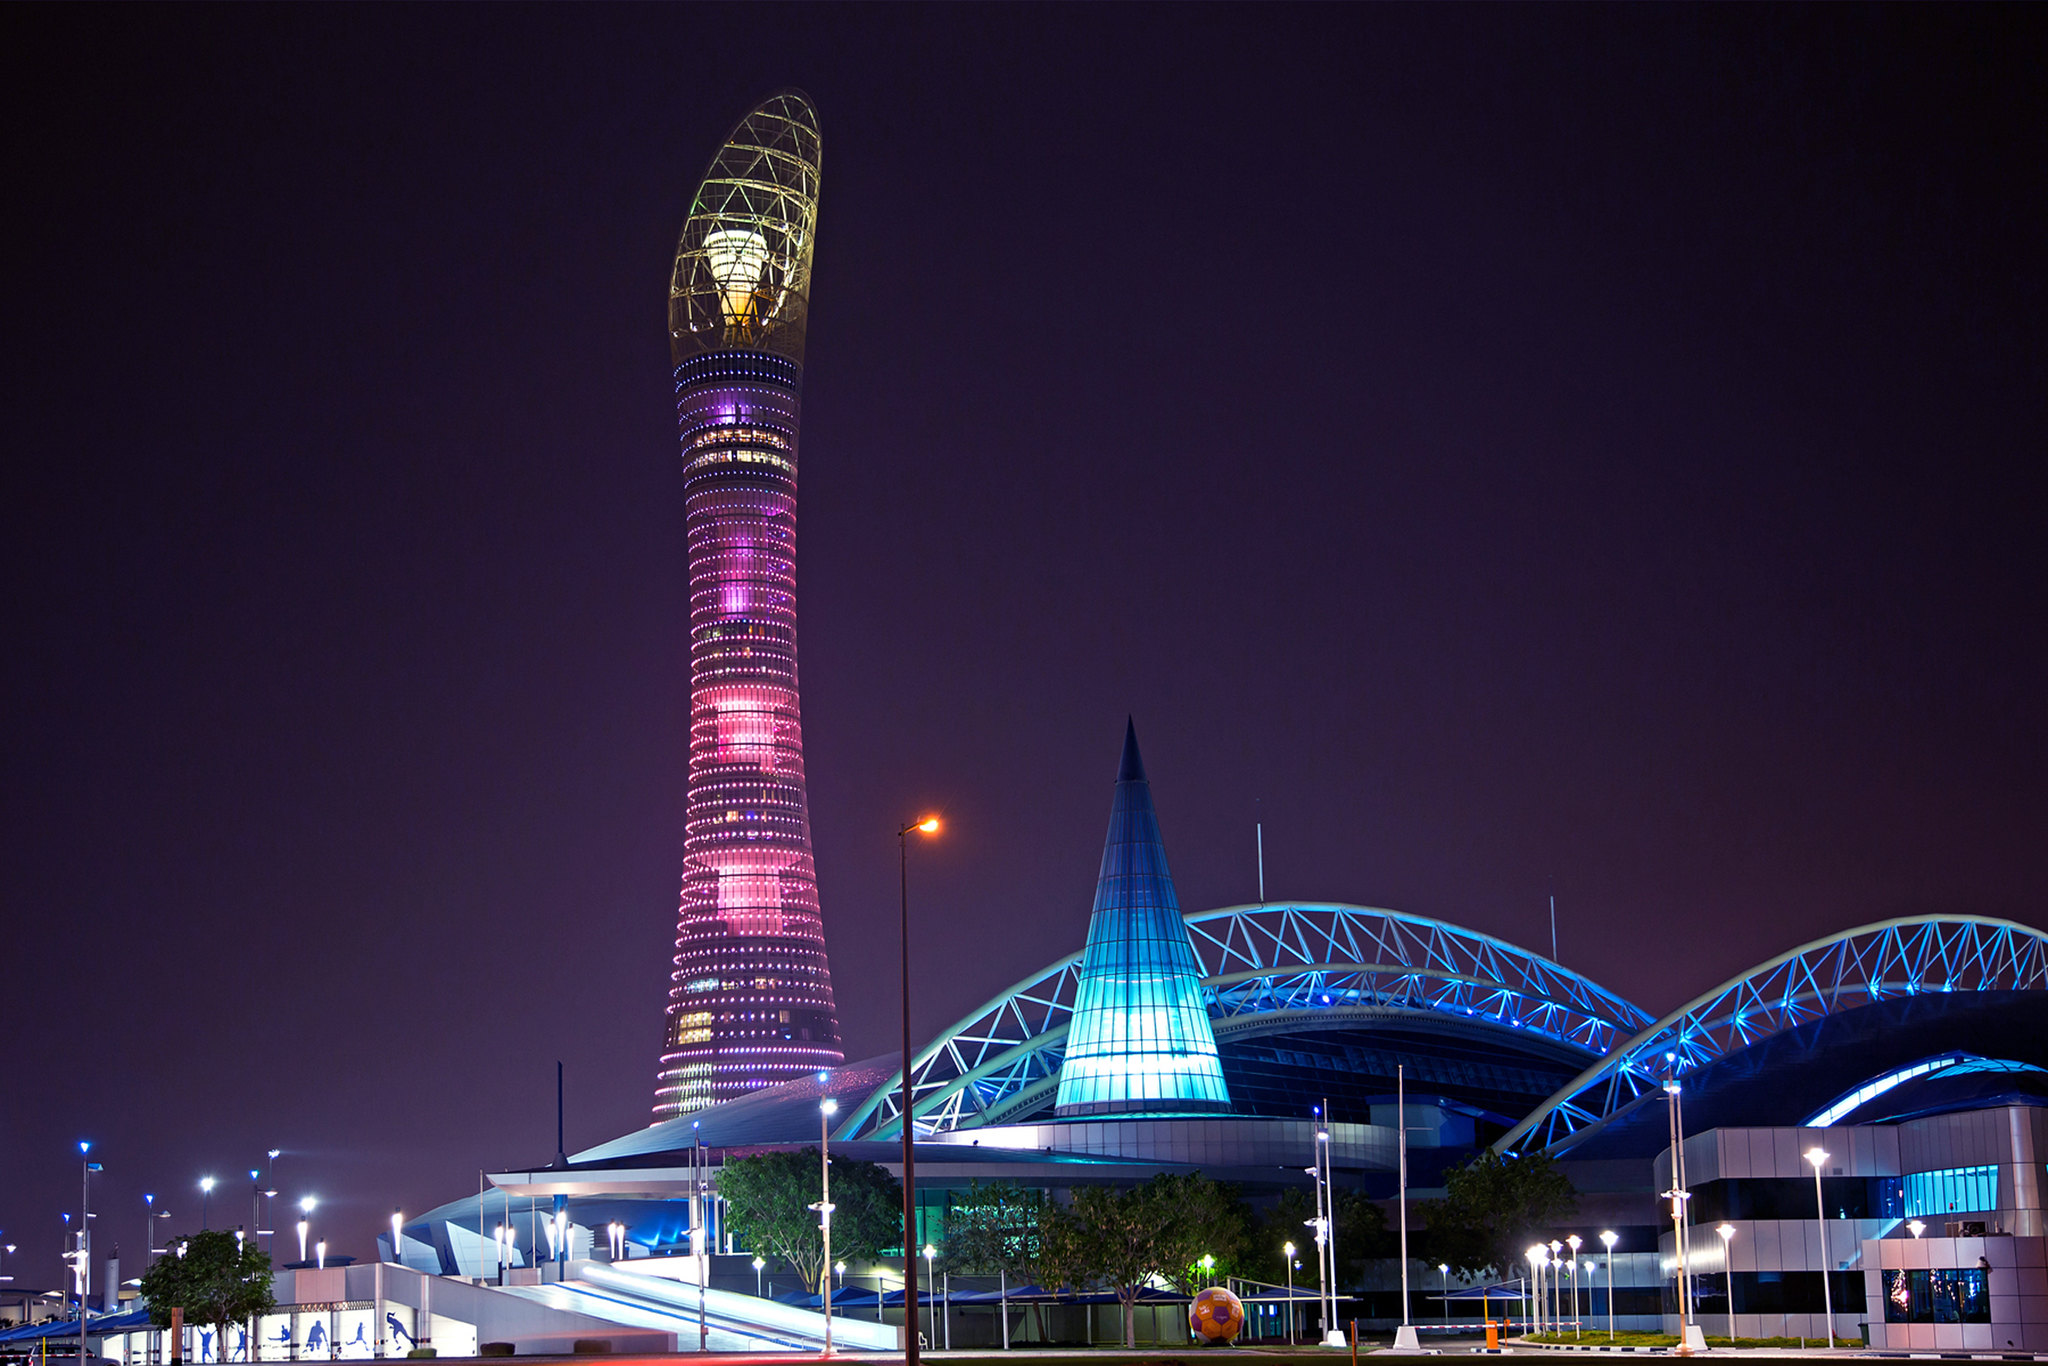 Fotografada à noite, a Aspire Tower mostra seu projeto de iluminação avançado (Foto: Ministério das Relações Exteriores/Flickr) 